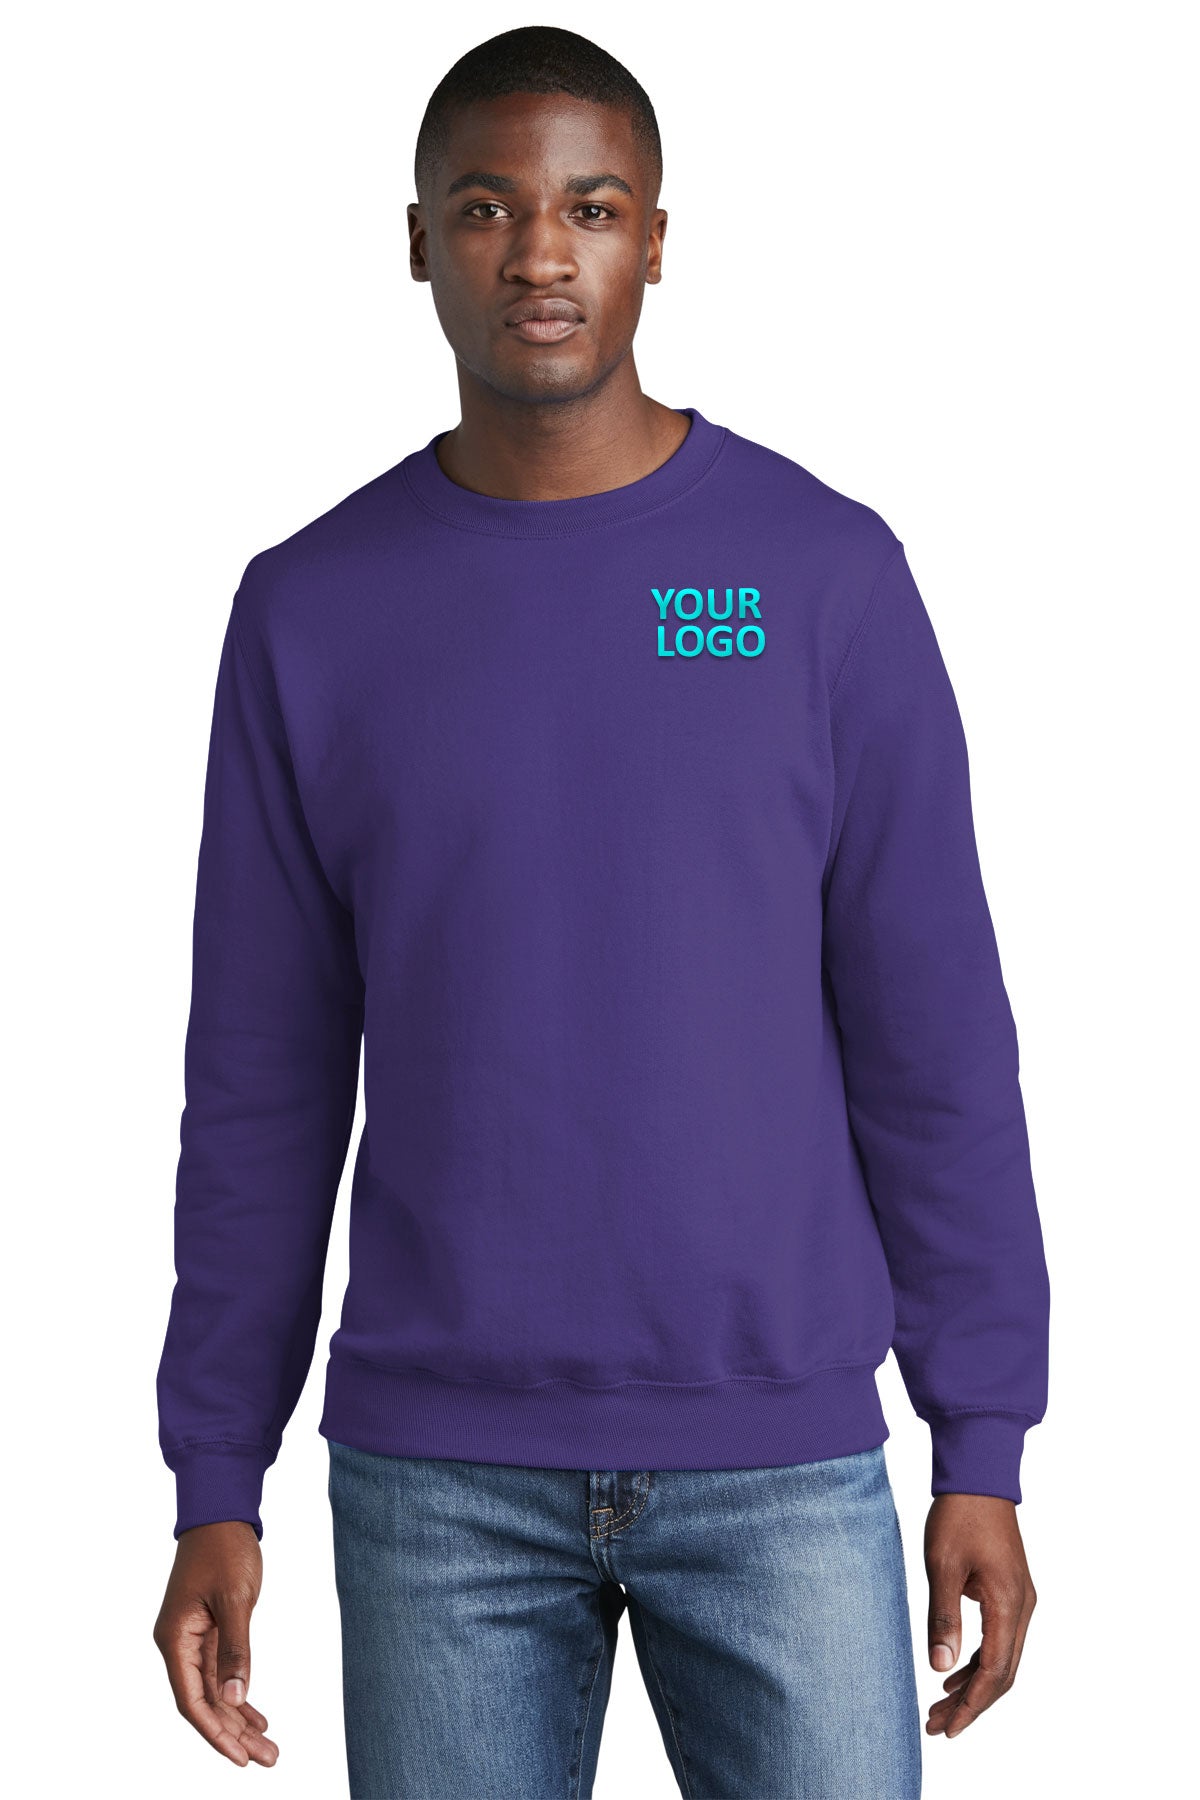 port & company purple pc78 company sweatshirts embroidered